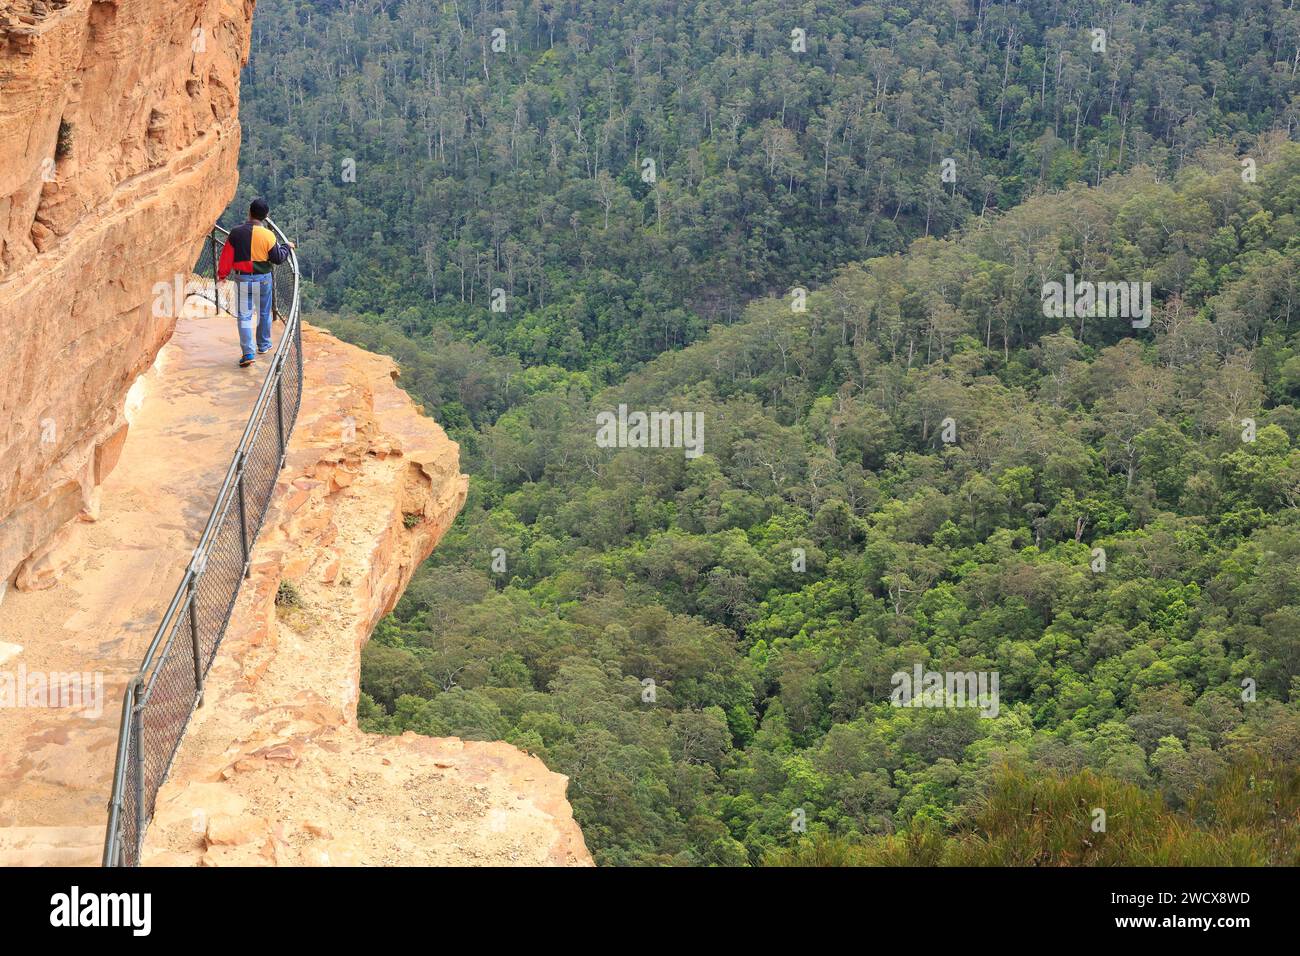 Australia, nuovo Galles del Sud, Blue Mountains dichiarate Patrimonio dell'Umanità dall'UNESCO, Blue Mountains National Park, Katoomba, percorso lungo le cascate di Wentworth Falls Foto Stock